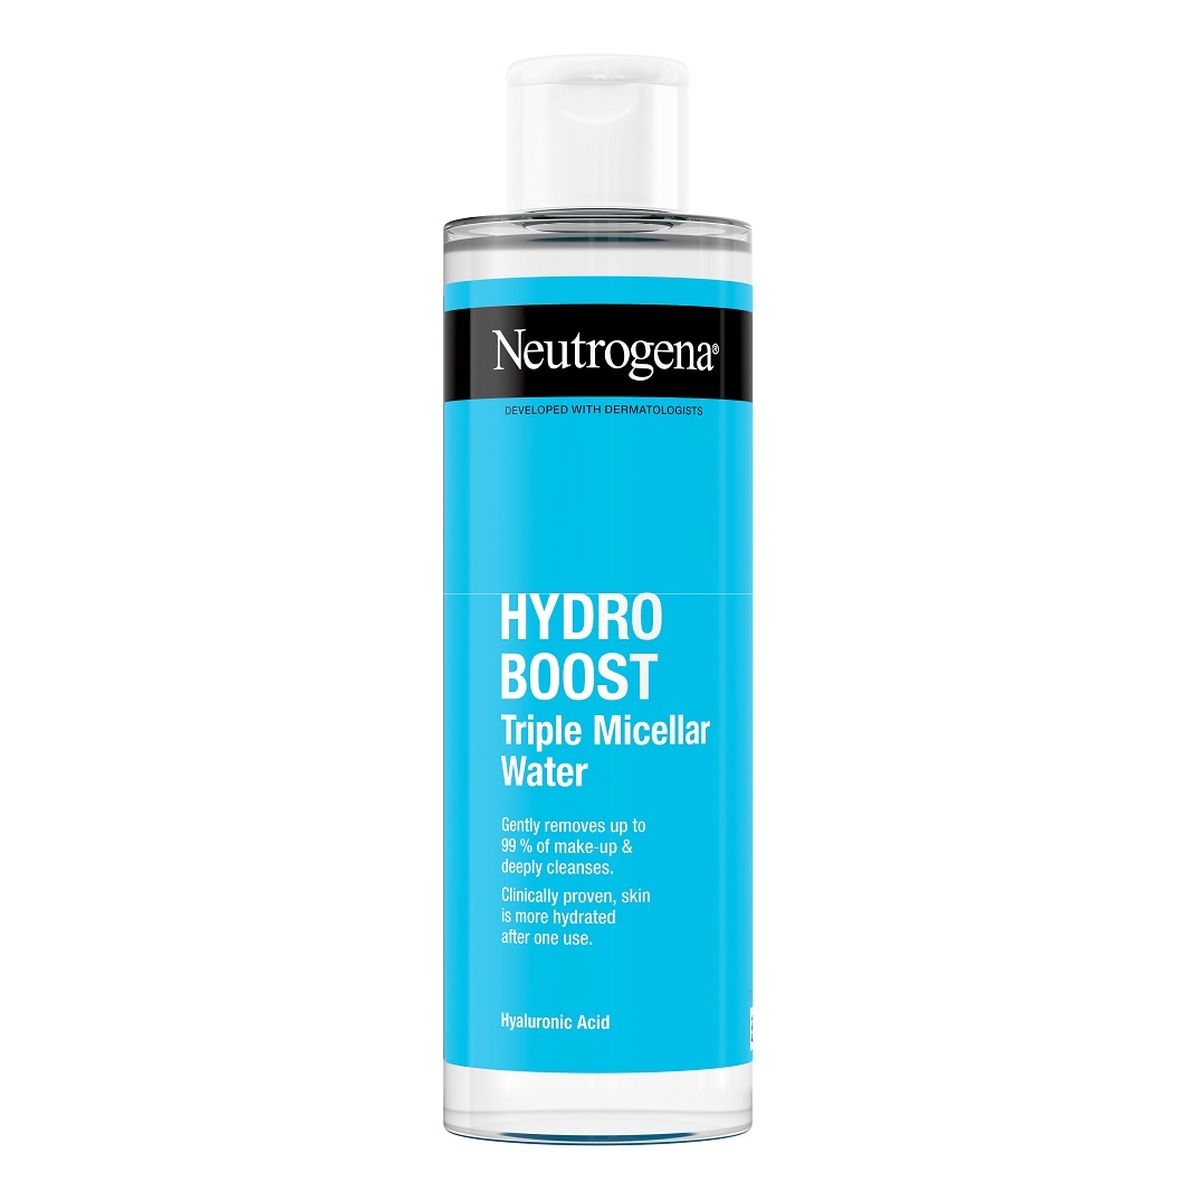 Neutrogena Hydro Boost nawadniająca Woda micelarna 3w1 400ml